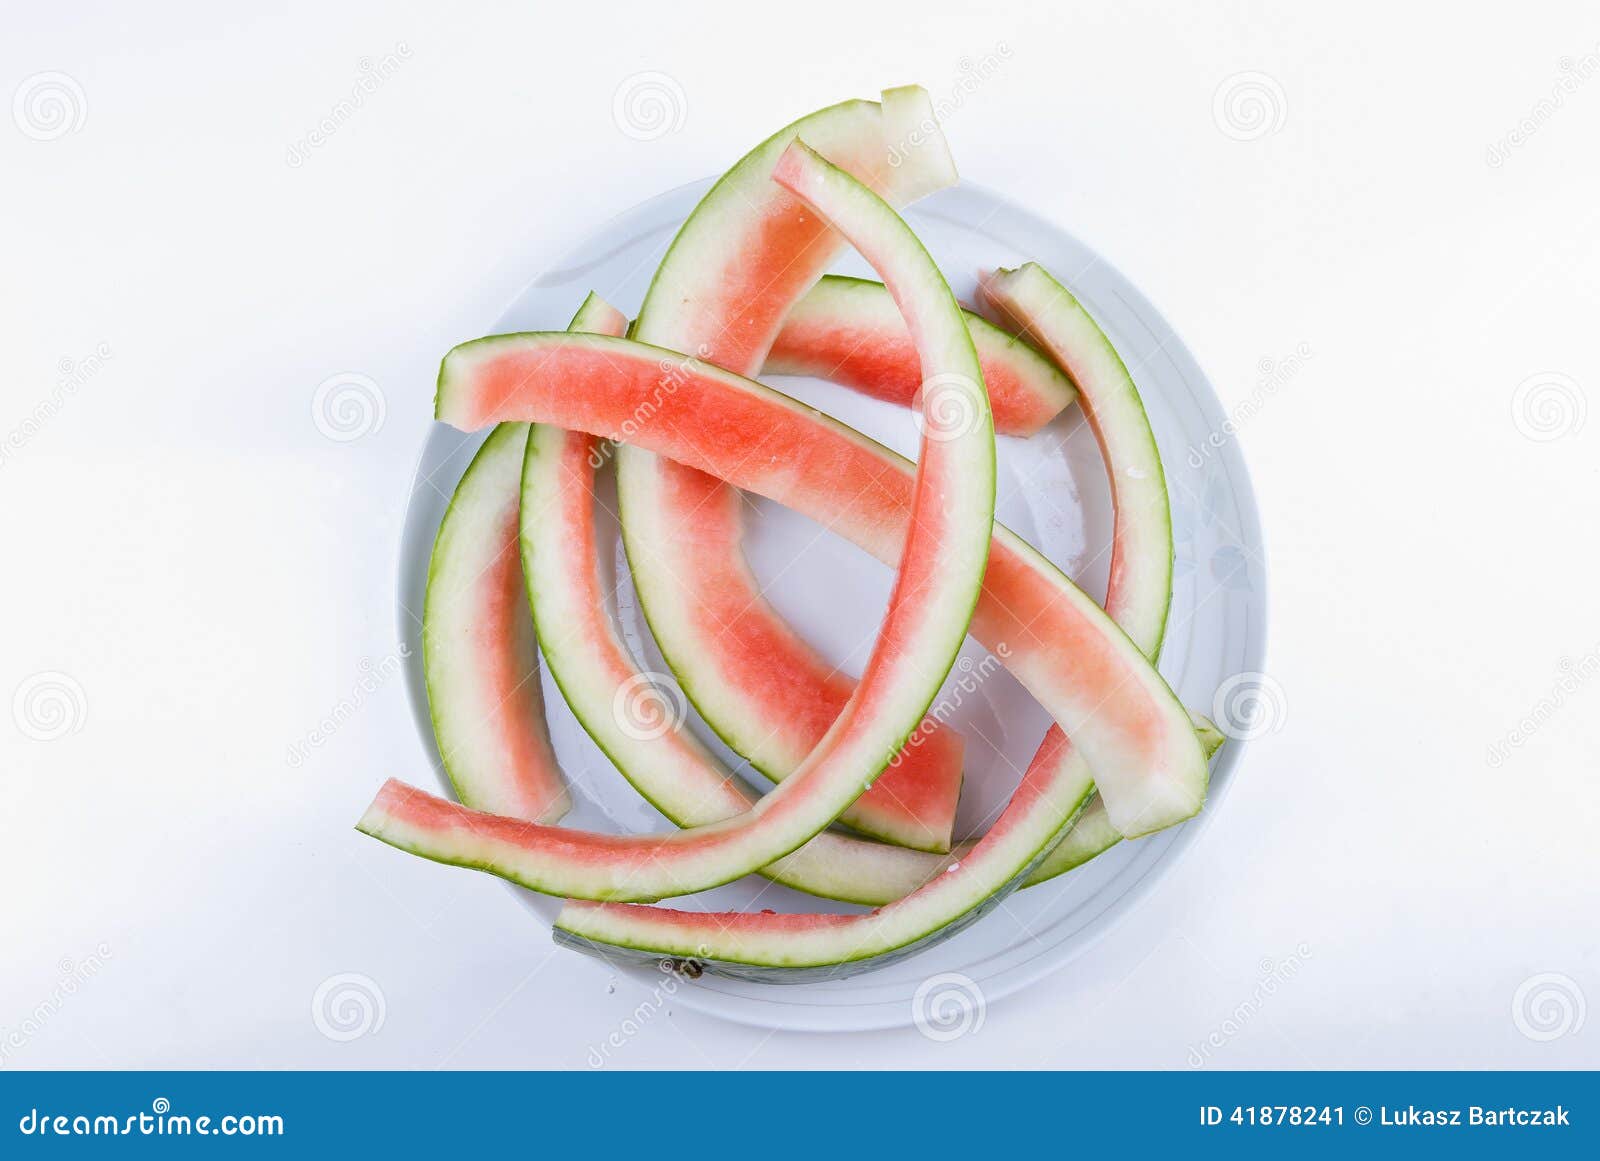 watermelon leftovers